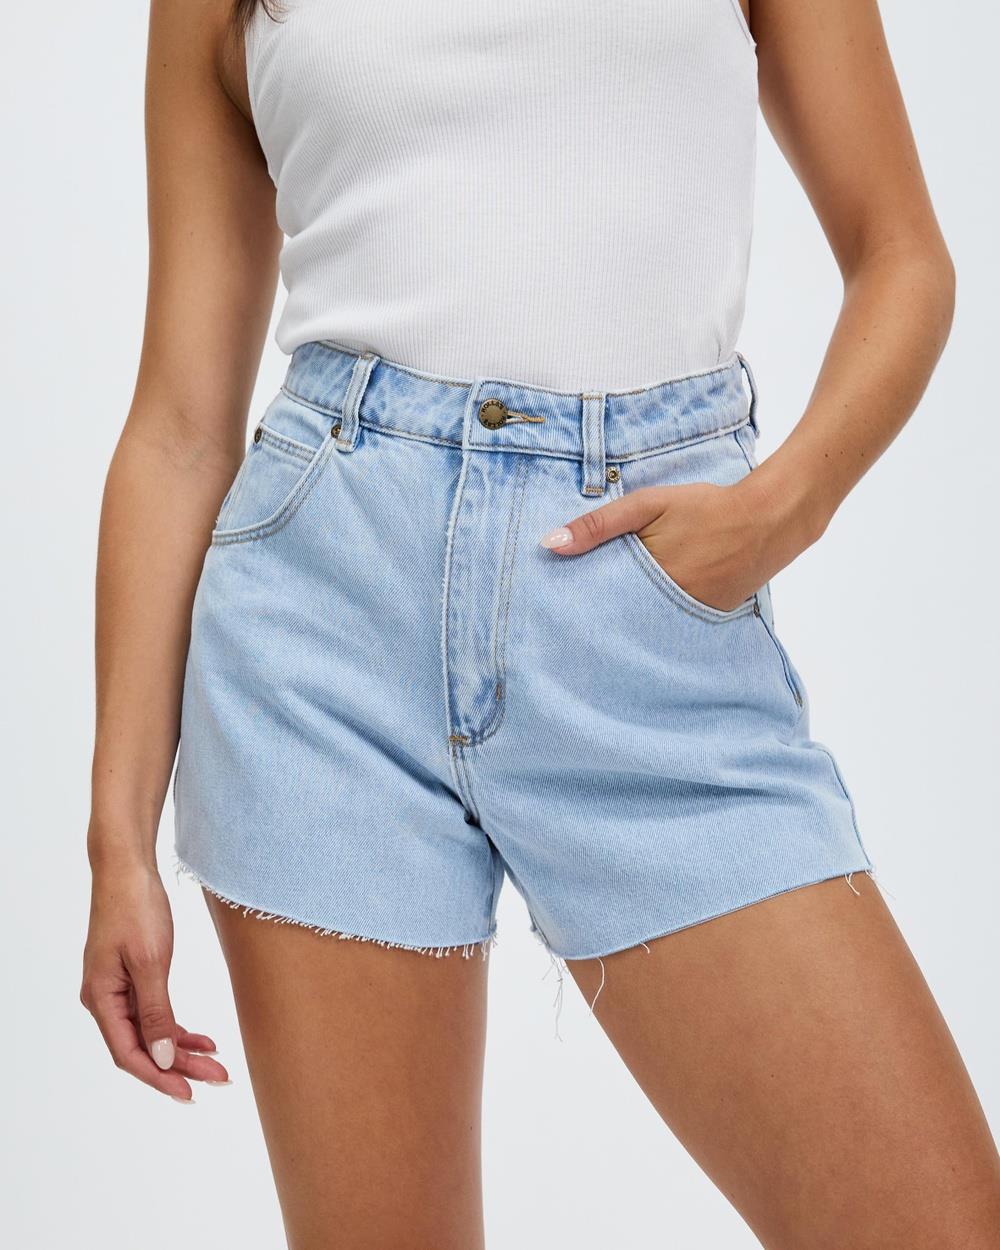 Rolla's - Mirage Shorts - Denim (Nina Blue Organic) Mirage Shorts